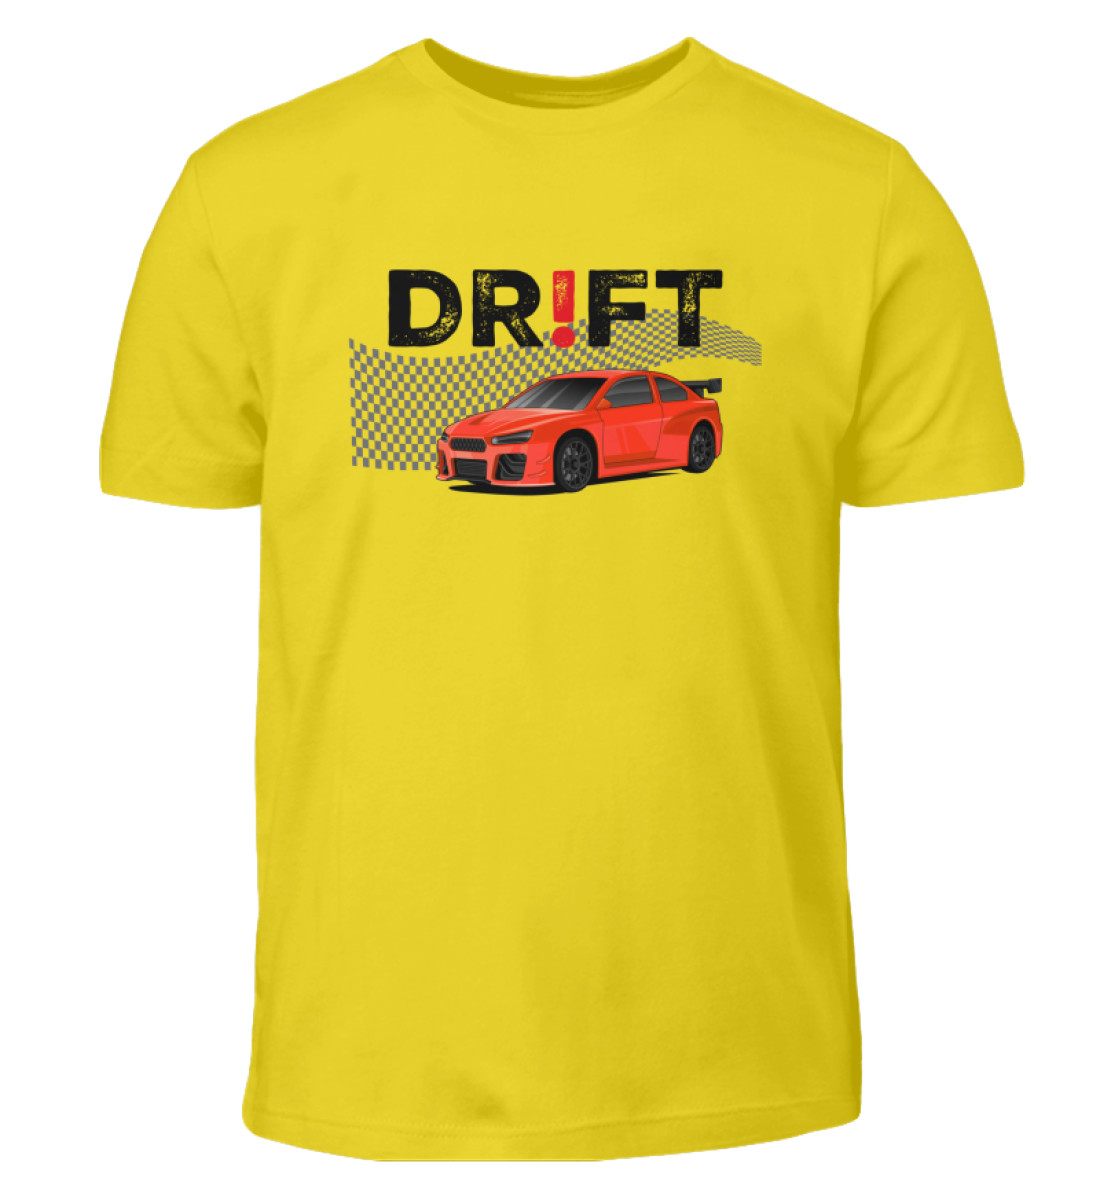 DR!FT-D1-RED - Kinder T-Shirt-1102